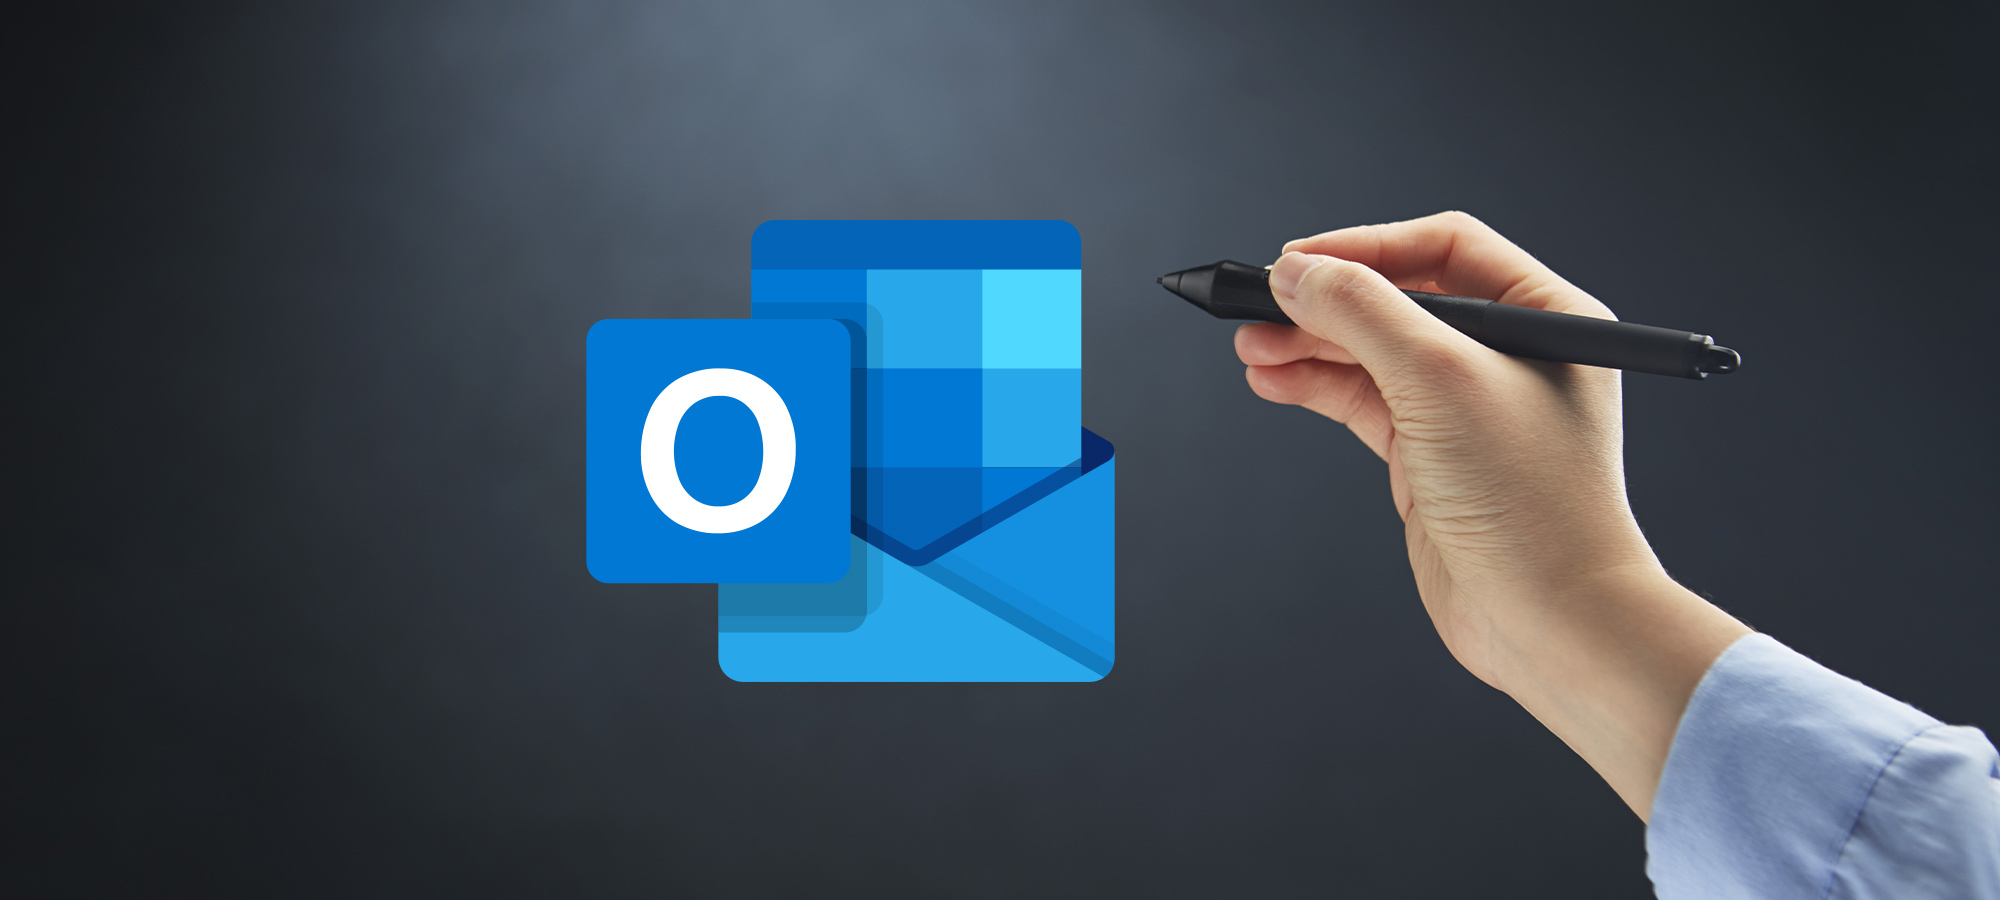 Logo Outlook avec une main qui tient un stylet